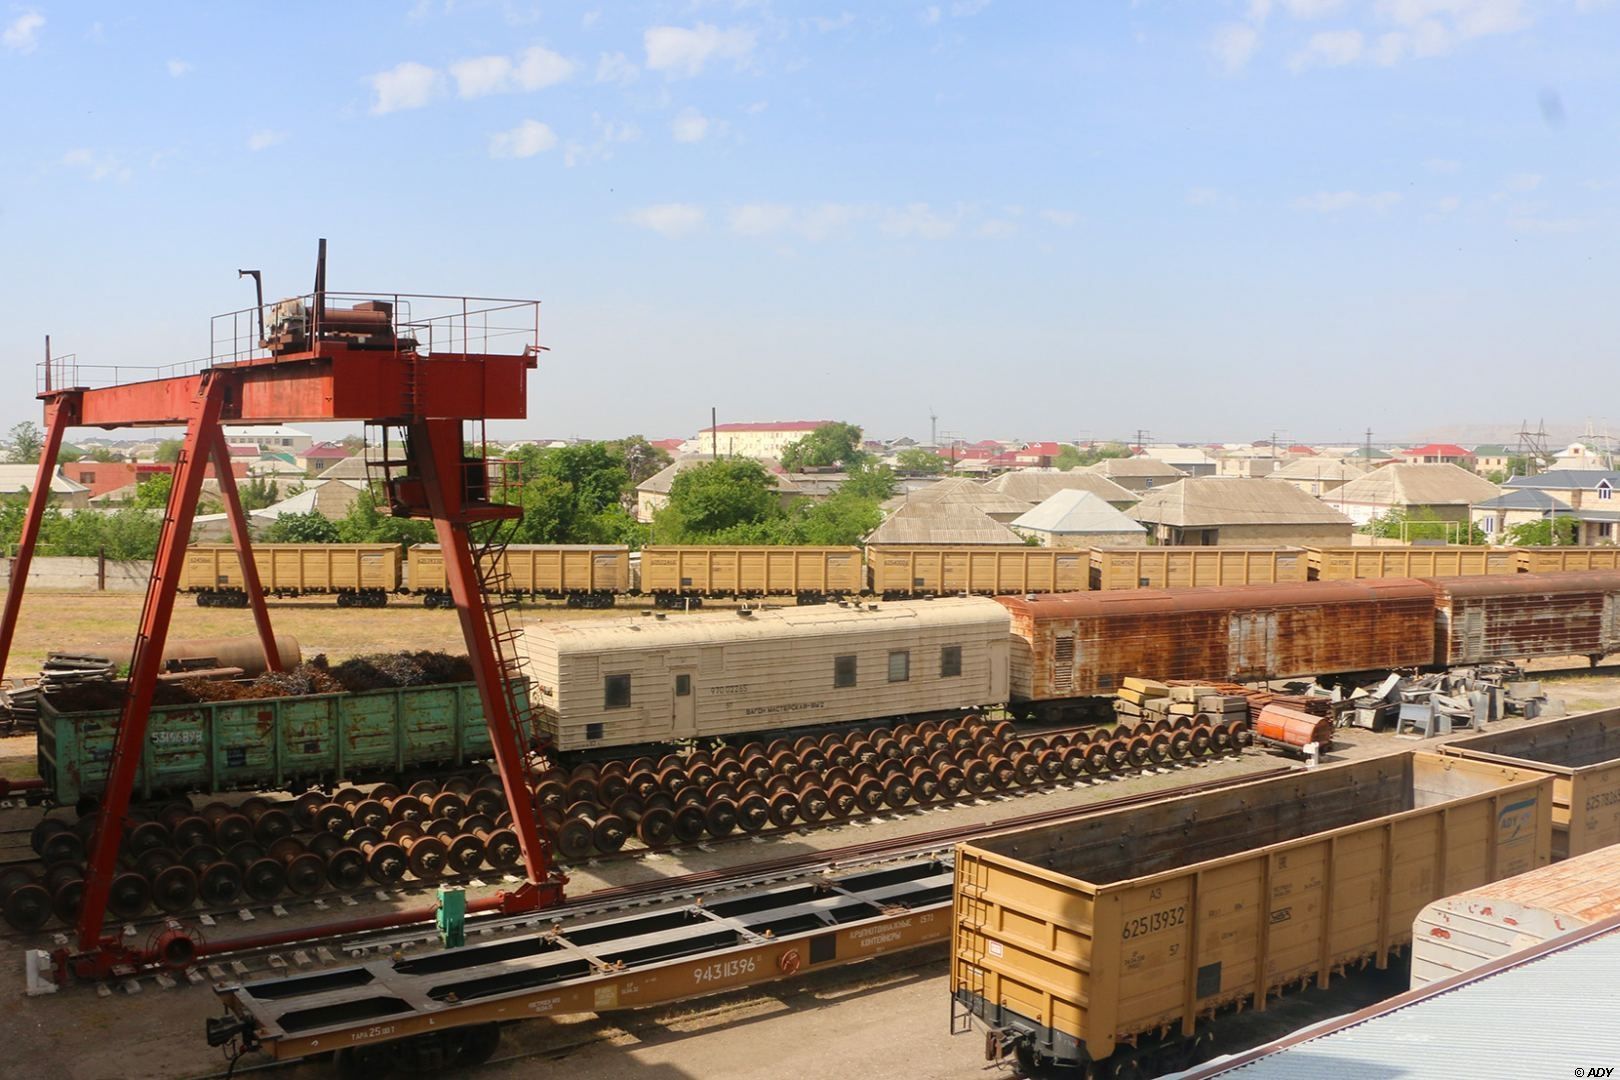 Le dépôt de wagons « Sharg » en Azerbaïdjan, exploité par l'entreprise férroviaire « ADY Express », termine l'année 2020 avec des indicateurs en hausse